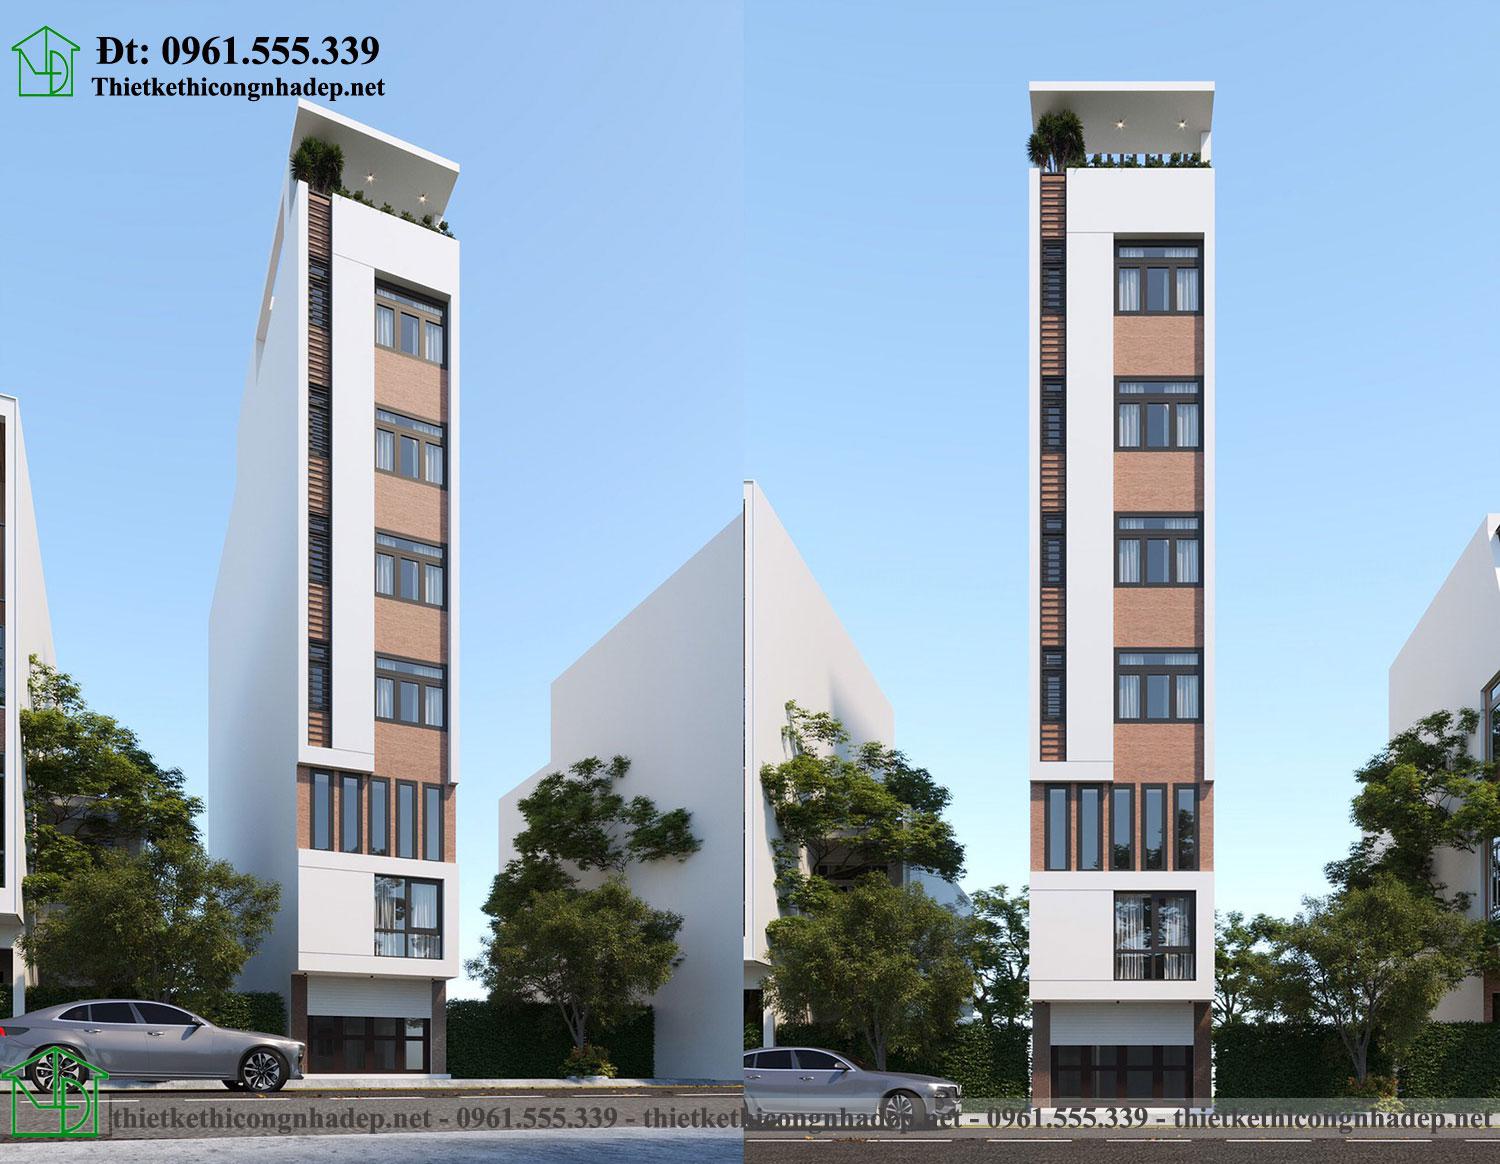 Thiết kế chung cư mini cho thuê 4x18m tại Hà Nội NDTKCC3